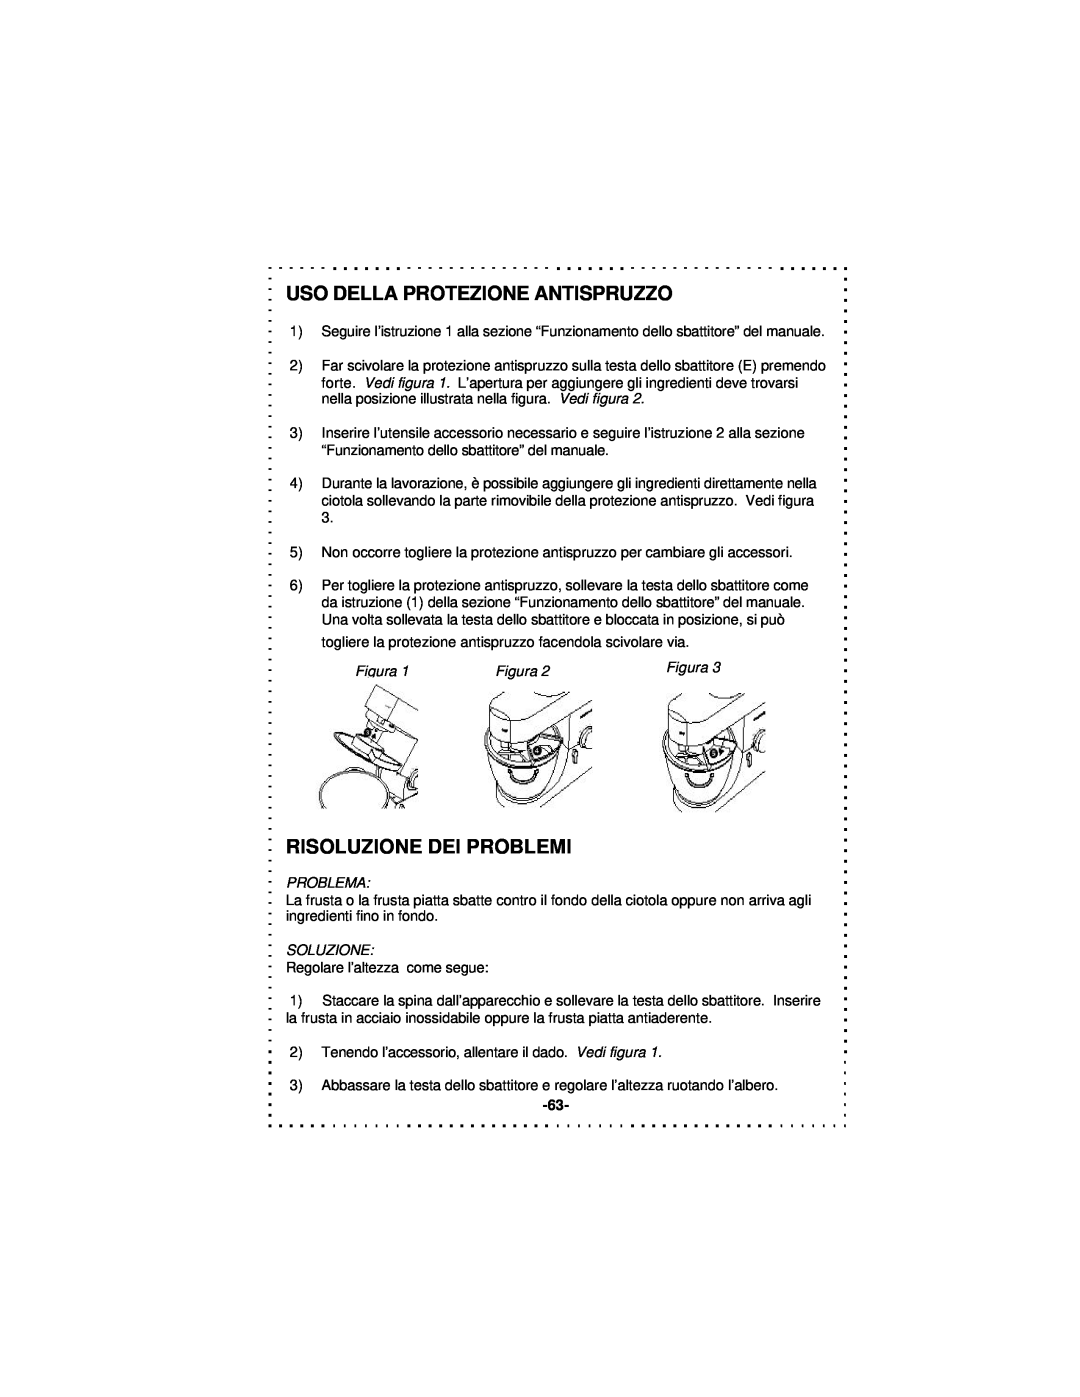 DeLonghi DSM5 - 7 Series Uso Della Protezione Antispruzzo, Risoluzione Dei Problemi, Figura, Problema, Soluzione 